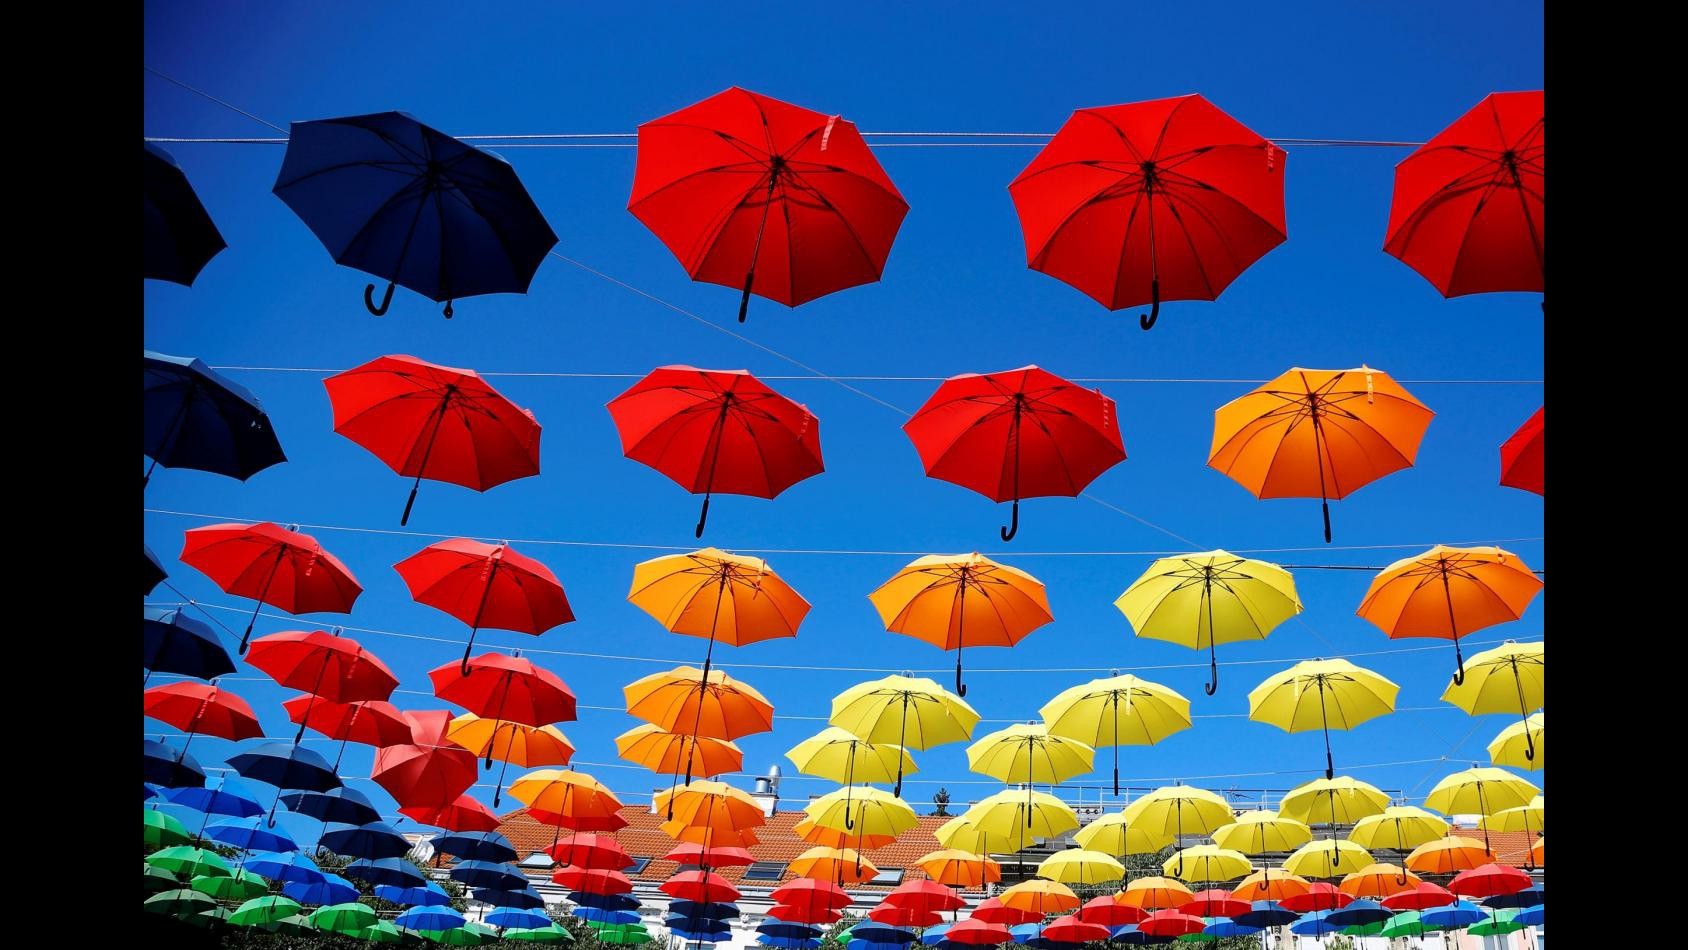 FOTO Pioggia di ombrelli multicolor a Vienna